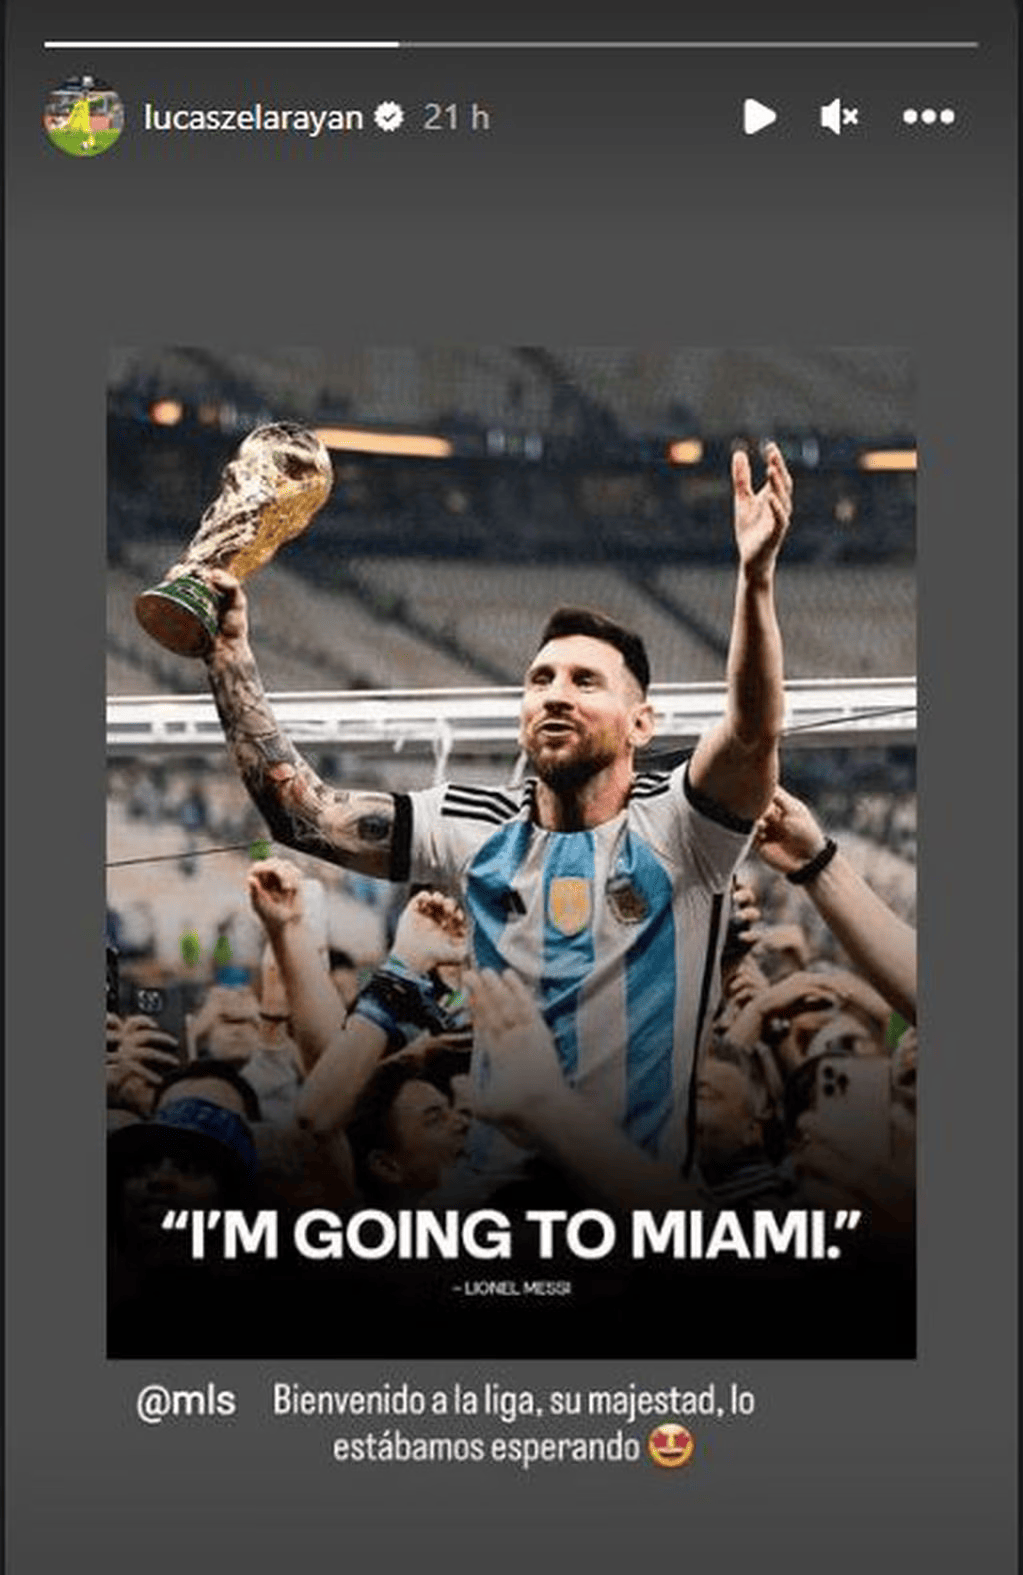 La reacción de Zelarayán tras conocer que Messi será su rival en la MLS | Canal Showsport